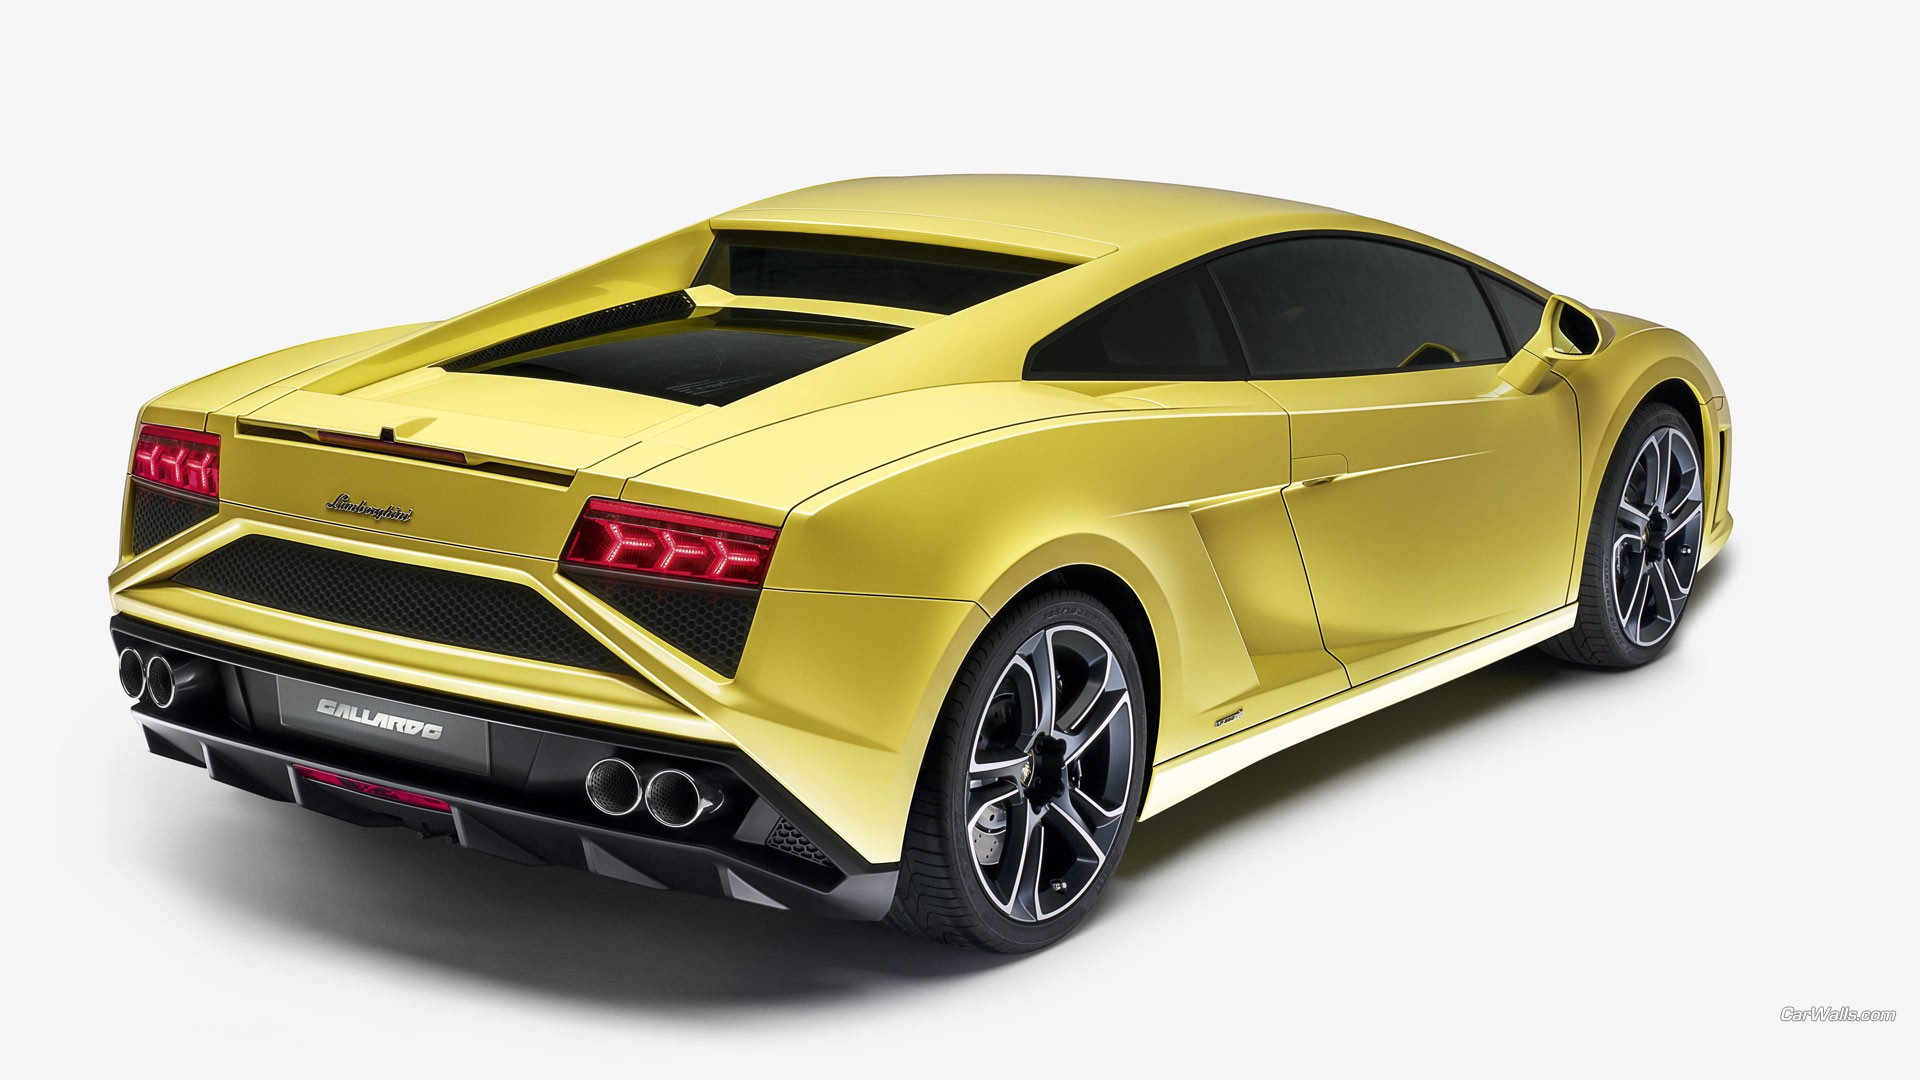 Lamborghini Gallardo золотого цвета